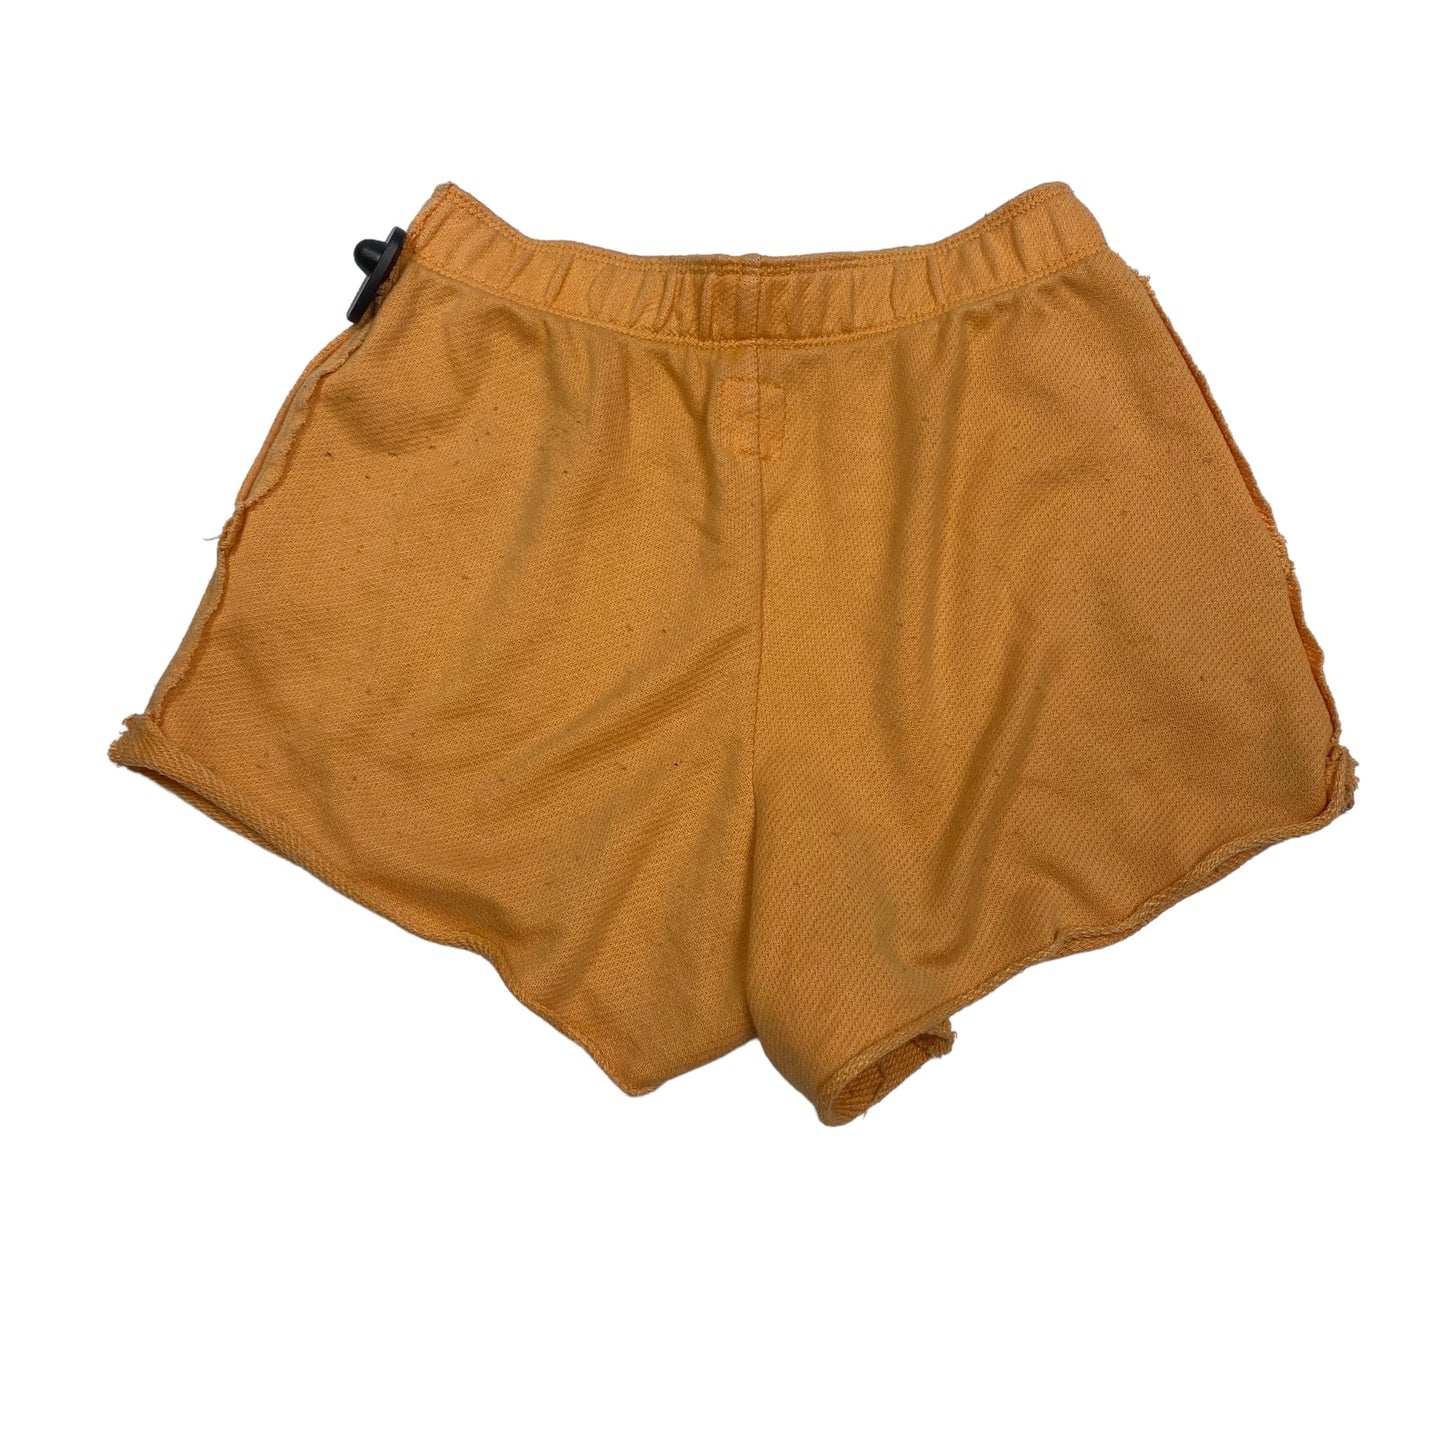 Orange Shorts Aerie, Size Xs